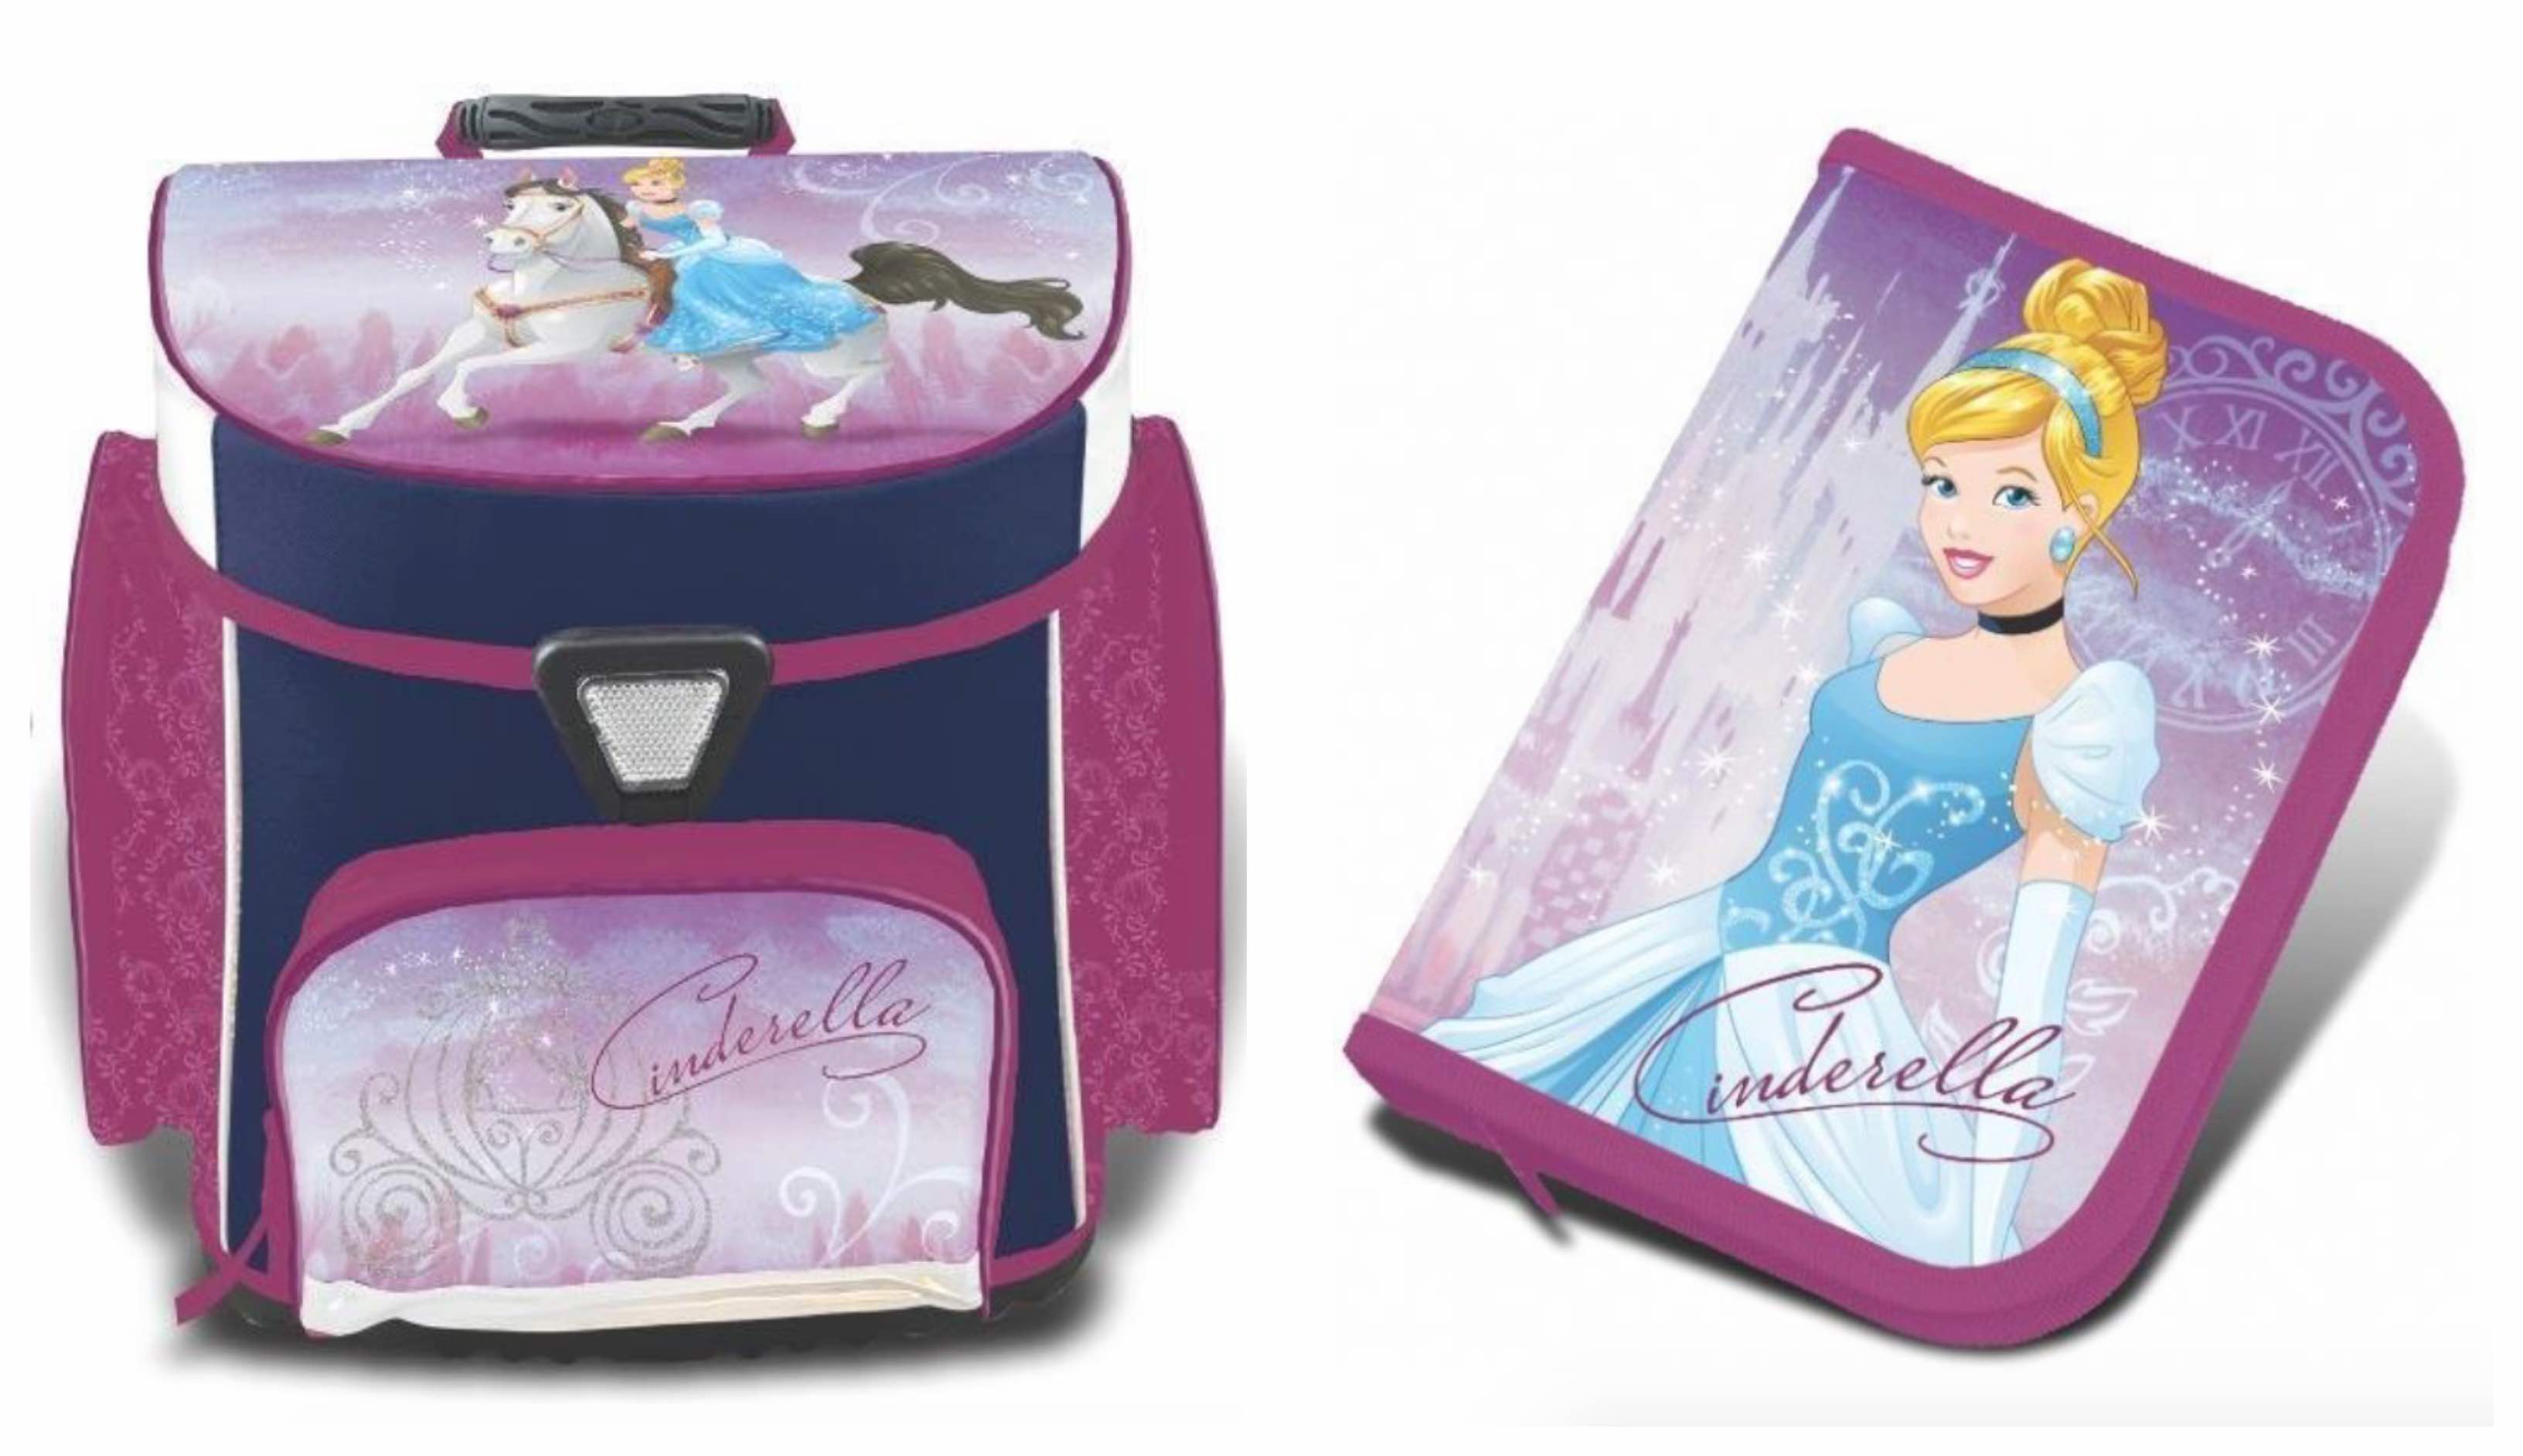 askepot skoletaske 2018, askepot rygsæk, skoletaske med askepot, disney prinsesse skoletaske, skoletasker til piger, skoletaske med prinsesse, klar til skolestart